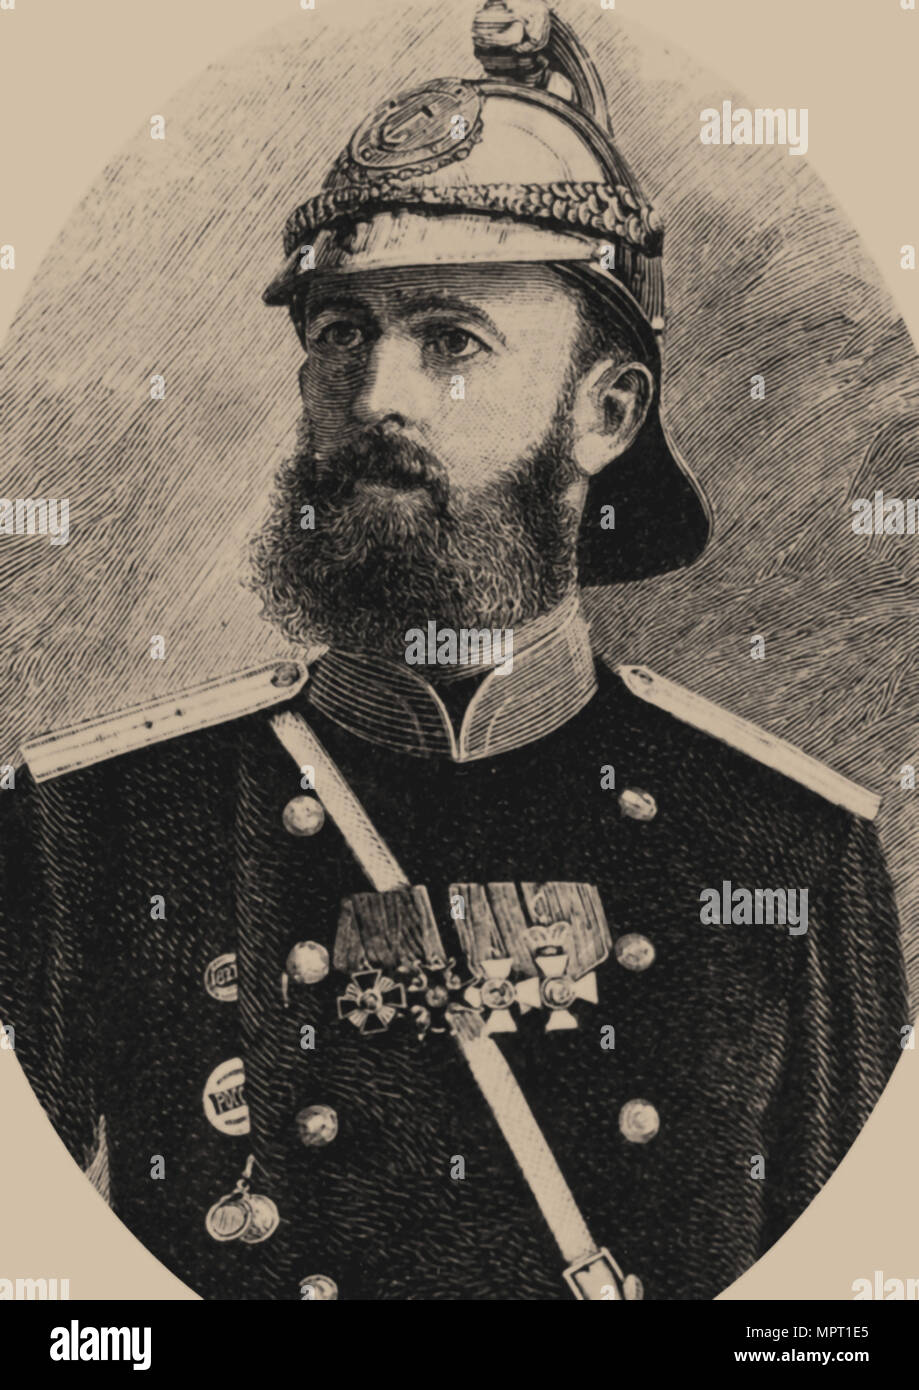 1891 году родоначальник российского пожарного добровольчества